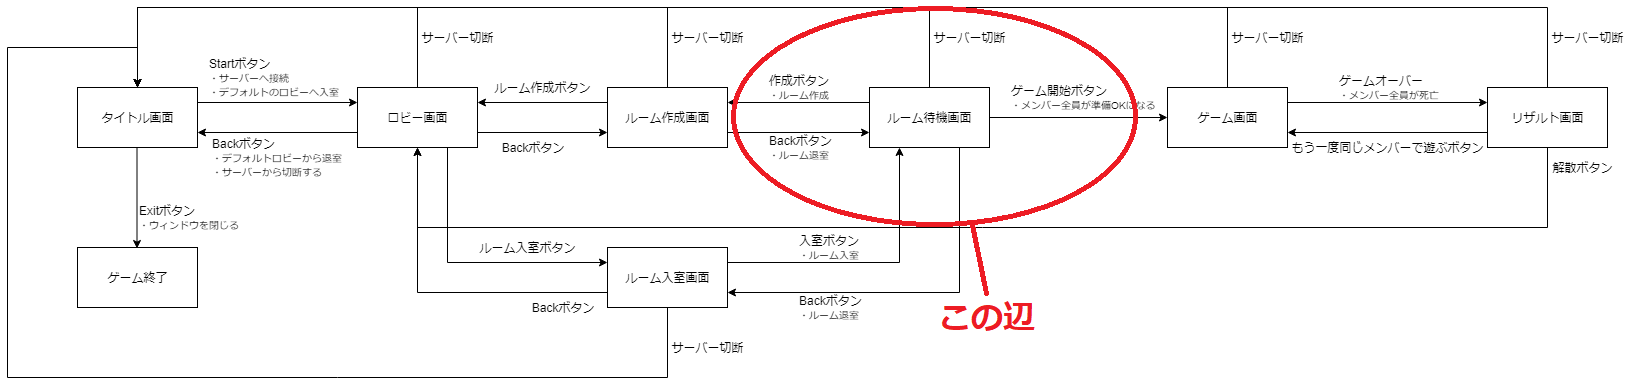 scene_diagram_2.png